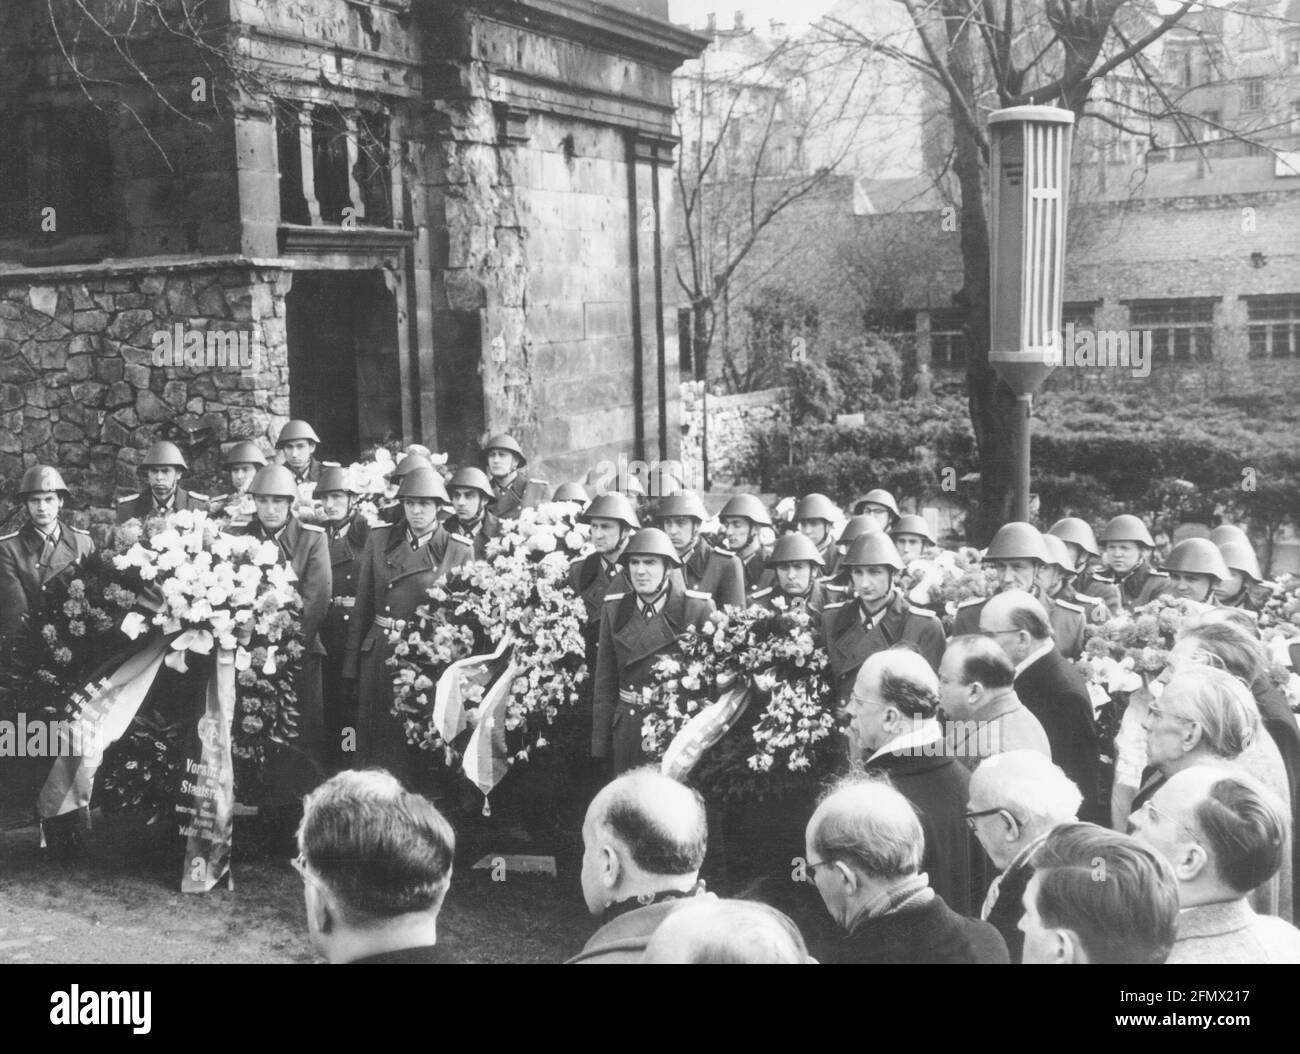 Mann, Heinrich, 27.3.1871 - 12,3.1950, autor / escritor alemán, su funeral, ADICIONAL-DERECHOS-LIQUIDACIÓN-INFO-NO DISPONIBLE Foto de stock